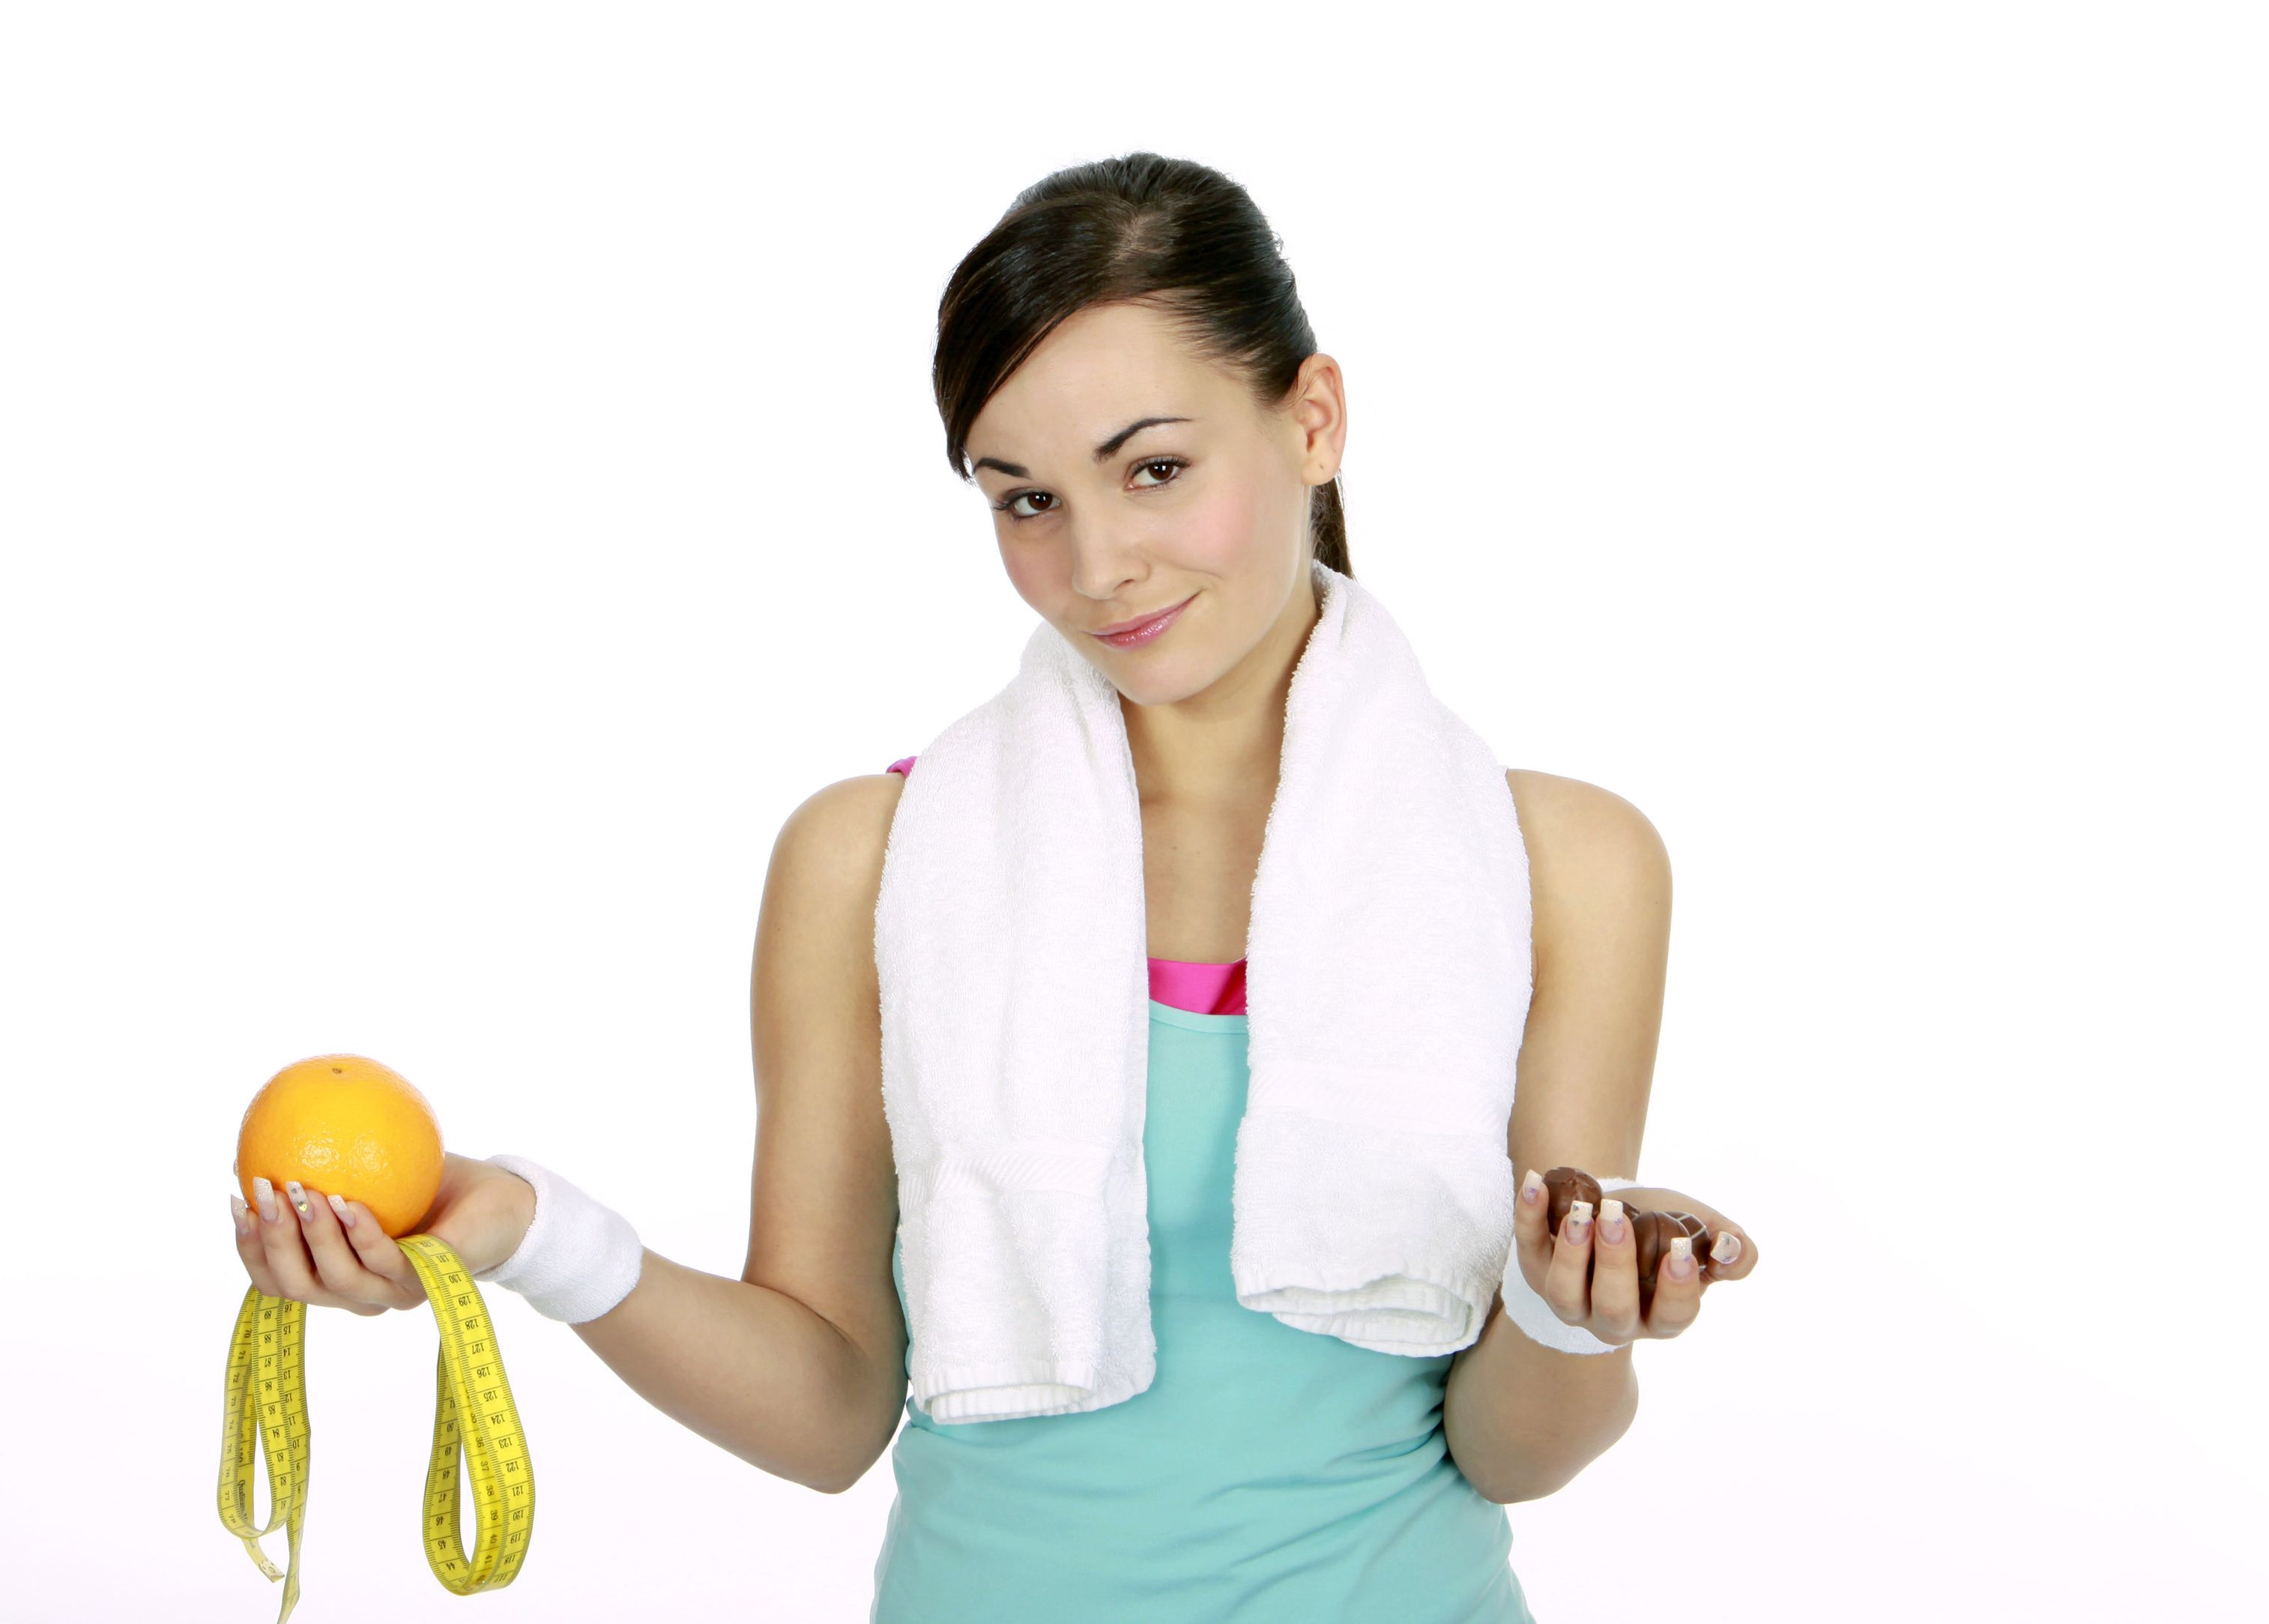 Sincerely Premature pause Dietă - Slăbeşti 2 kg într-o săptămână! | Dieta, Homepage Slider |  Avantaje.ro - De 20 de ani pretuieste femei ca tine